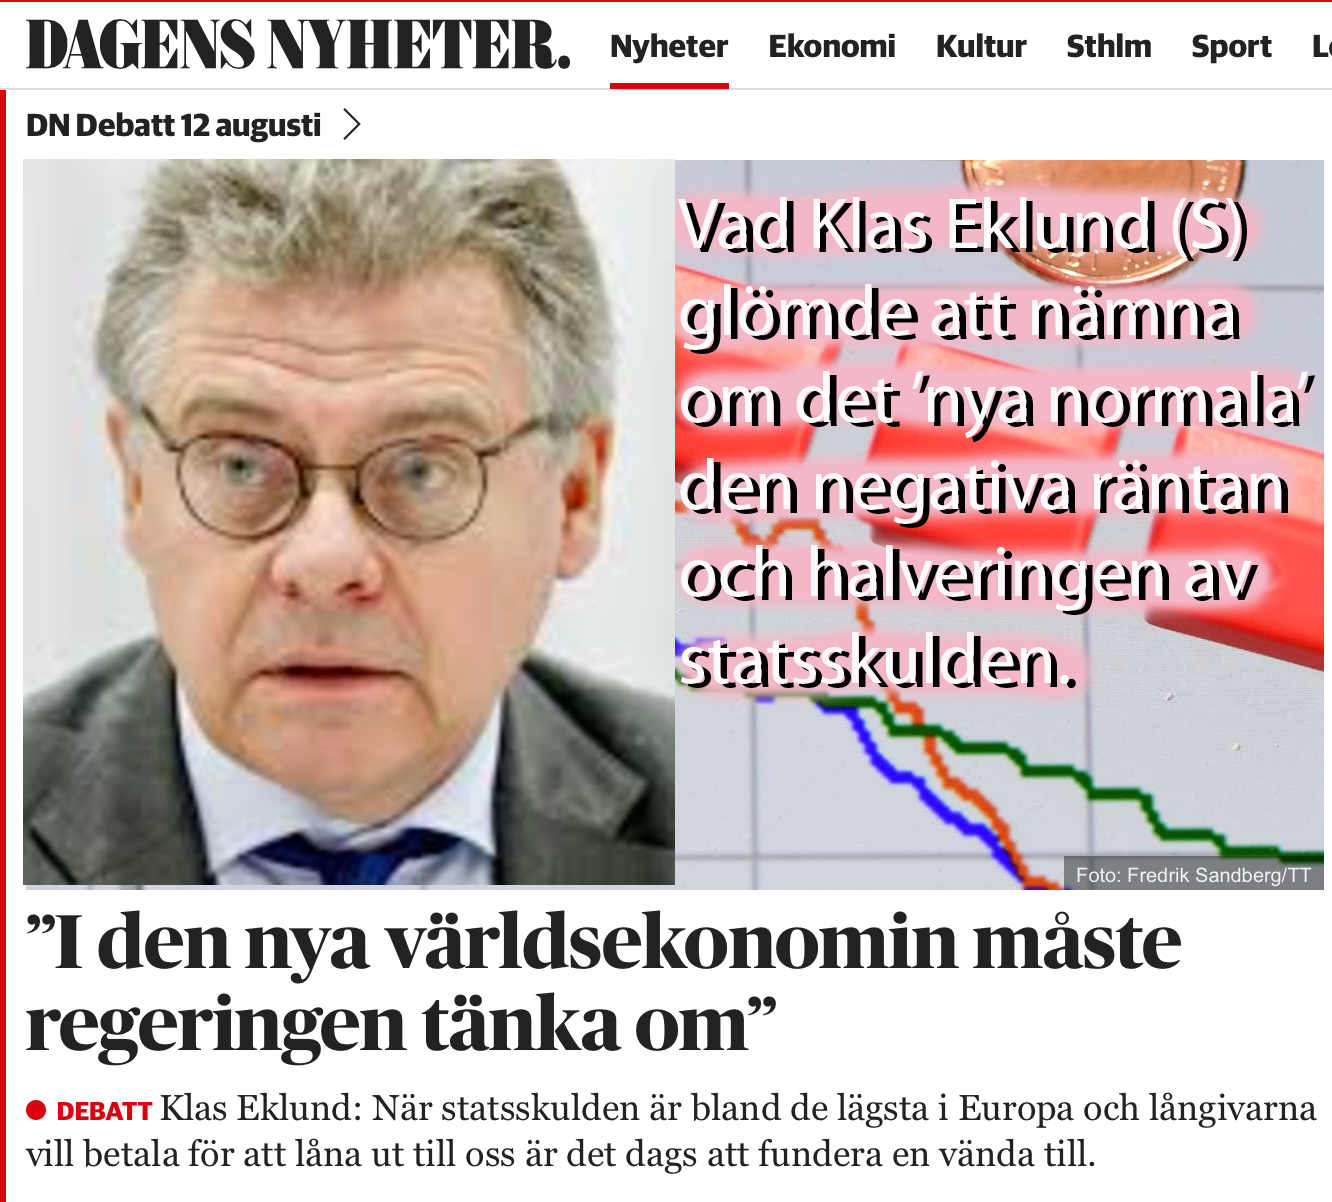 Klas Eklund (s) om den negativa räntan – men inget om det nya inflationssänkande svartlönekollektivet